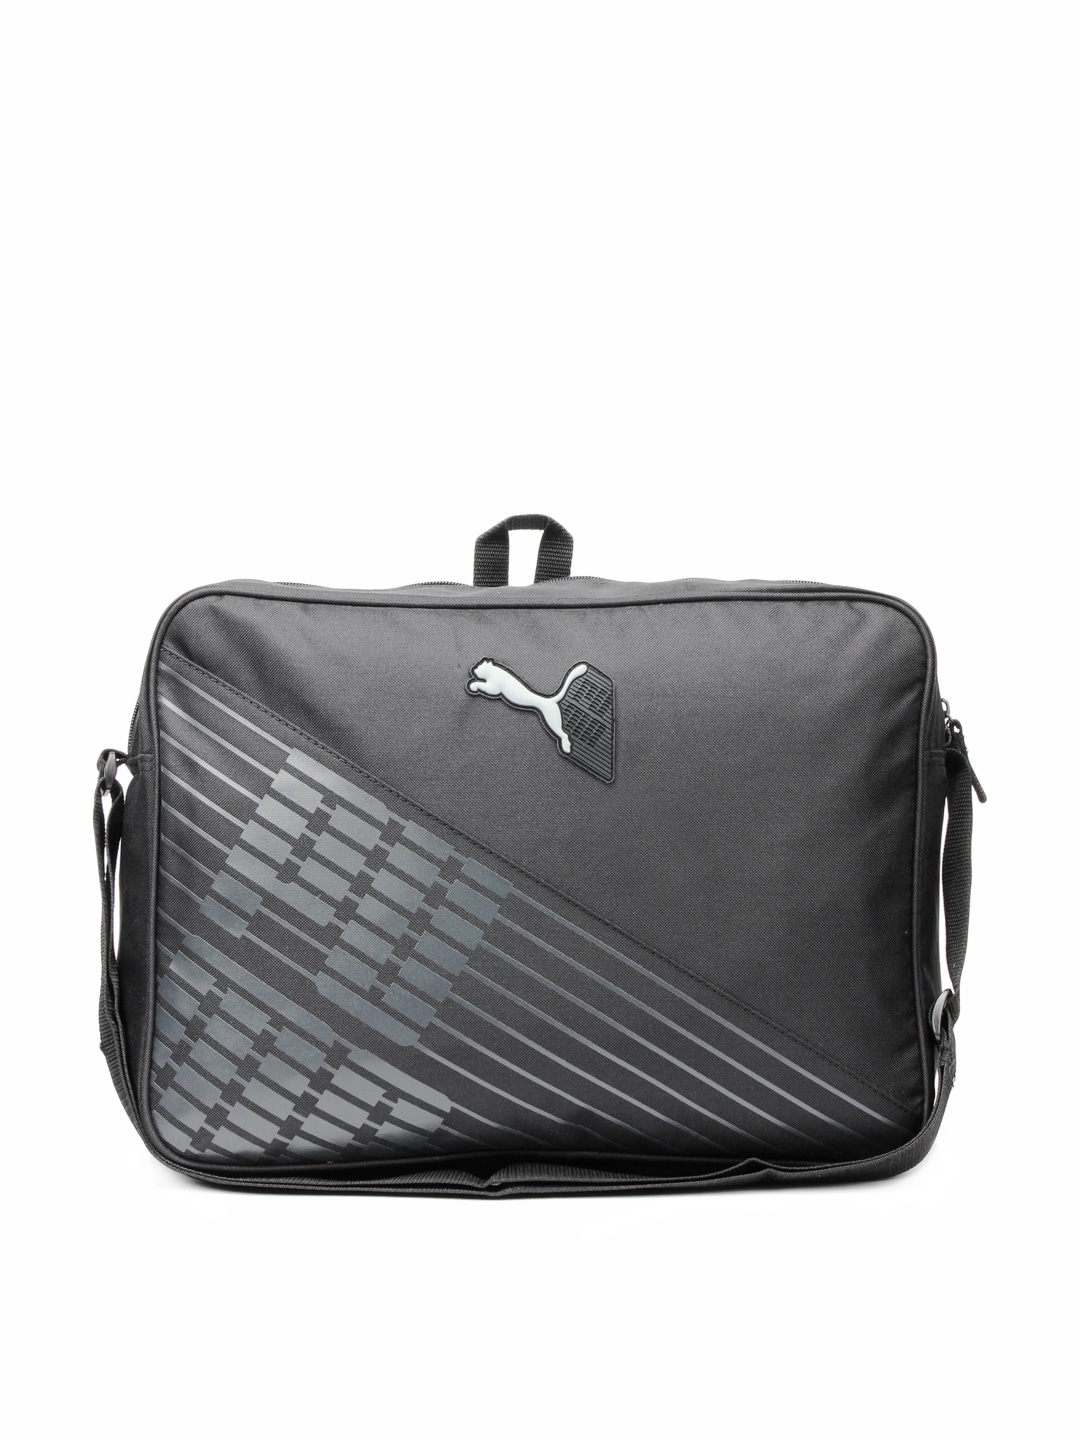 Puma Unisex Apex Black Laptop Bag